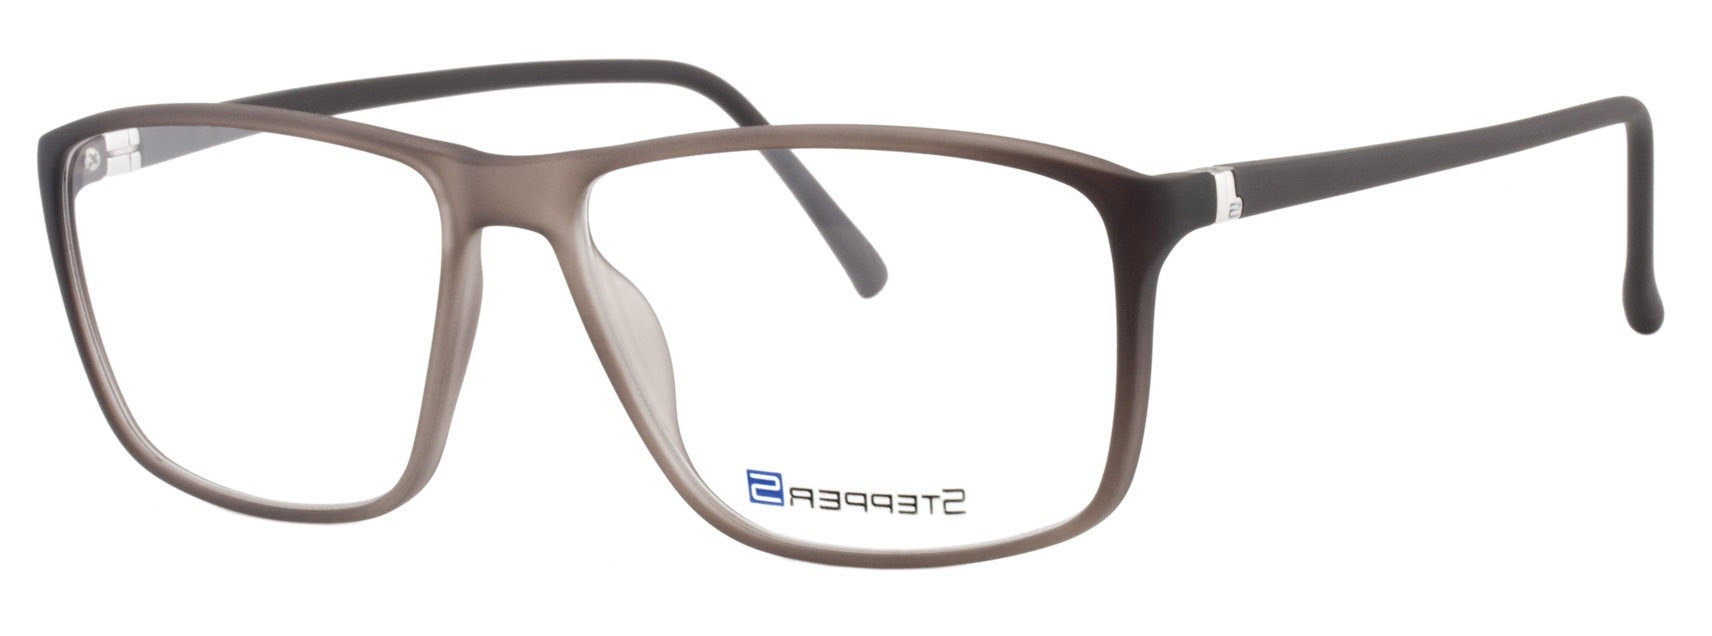 Stepper 10086 F210 - Oculos de Grau